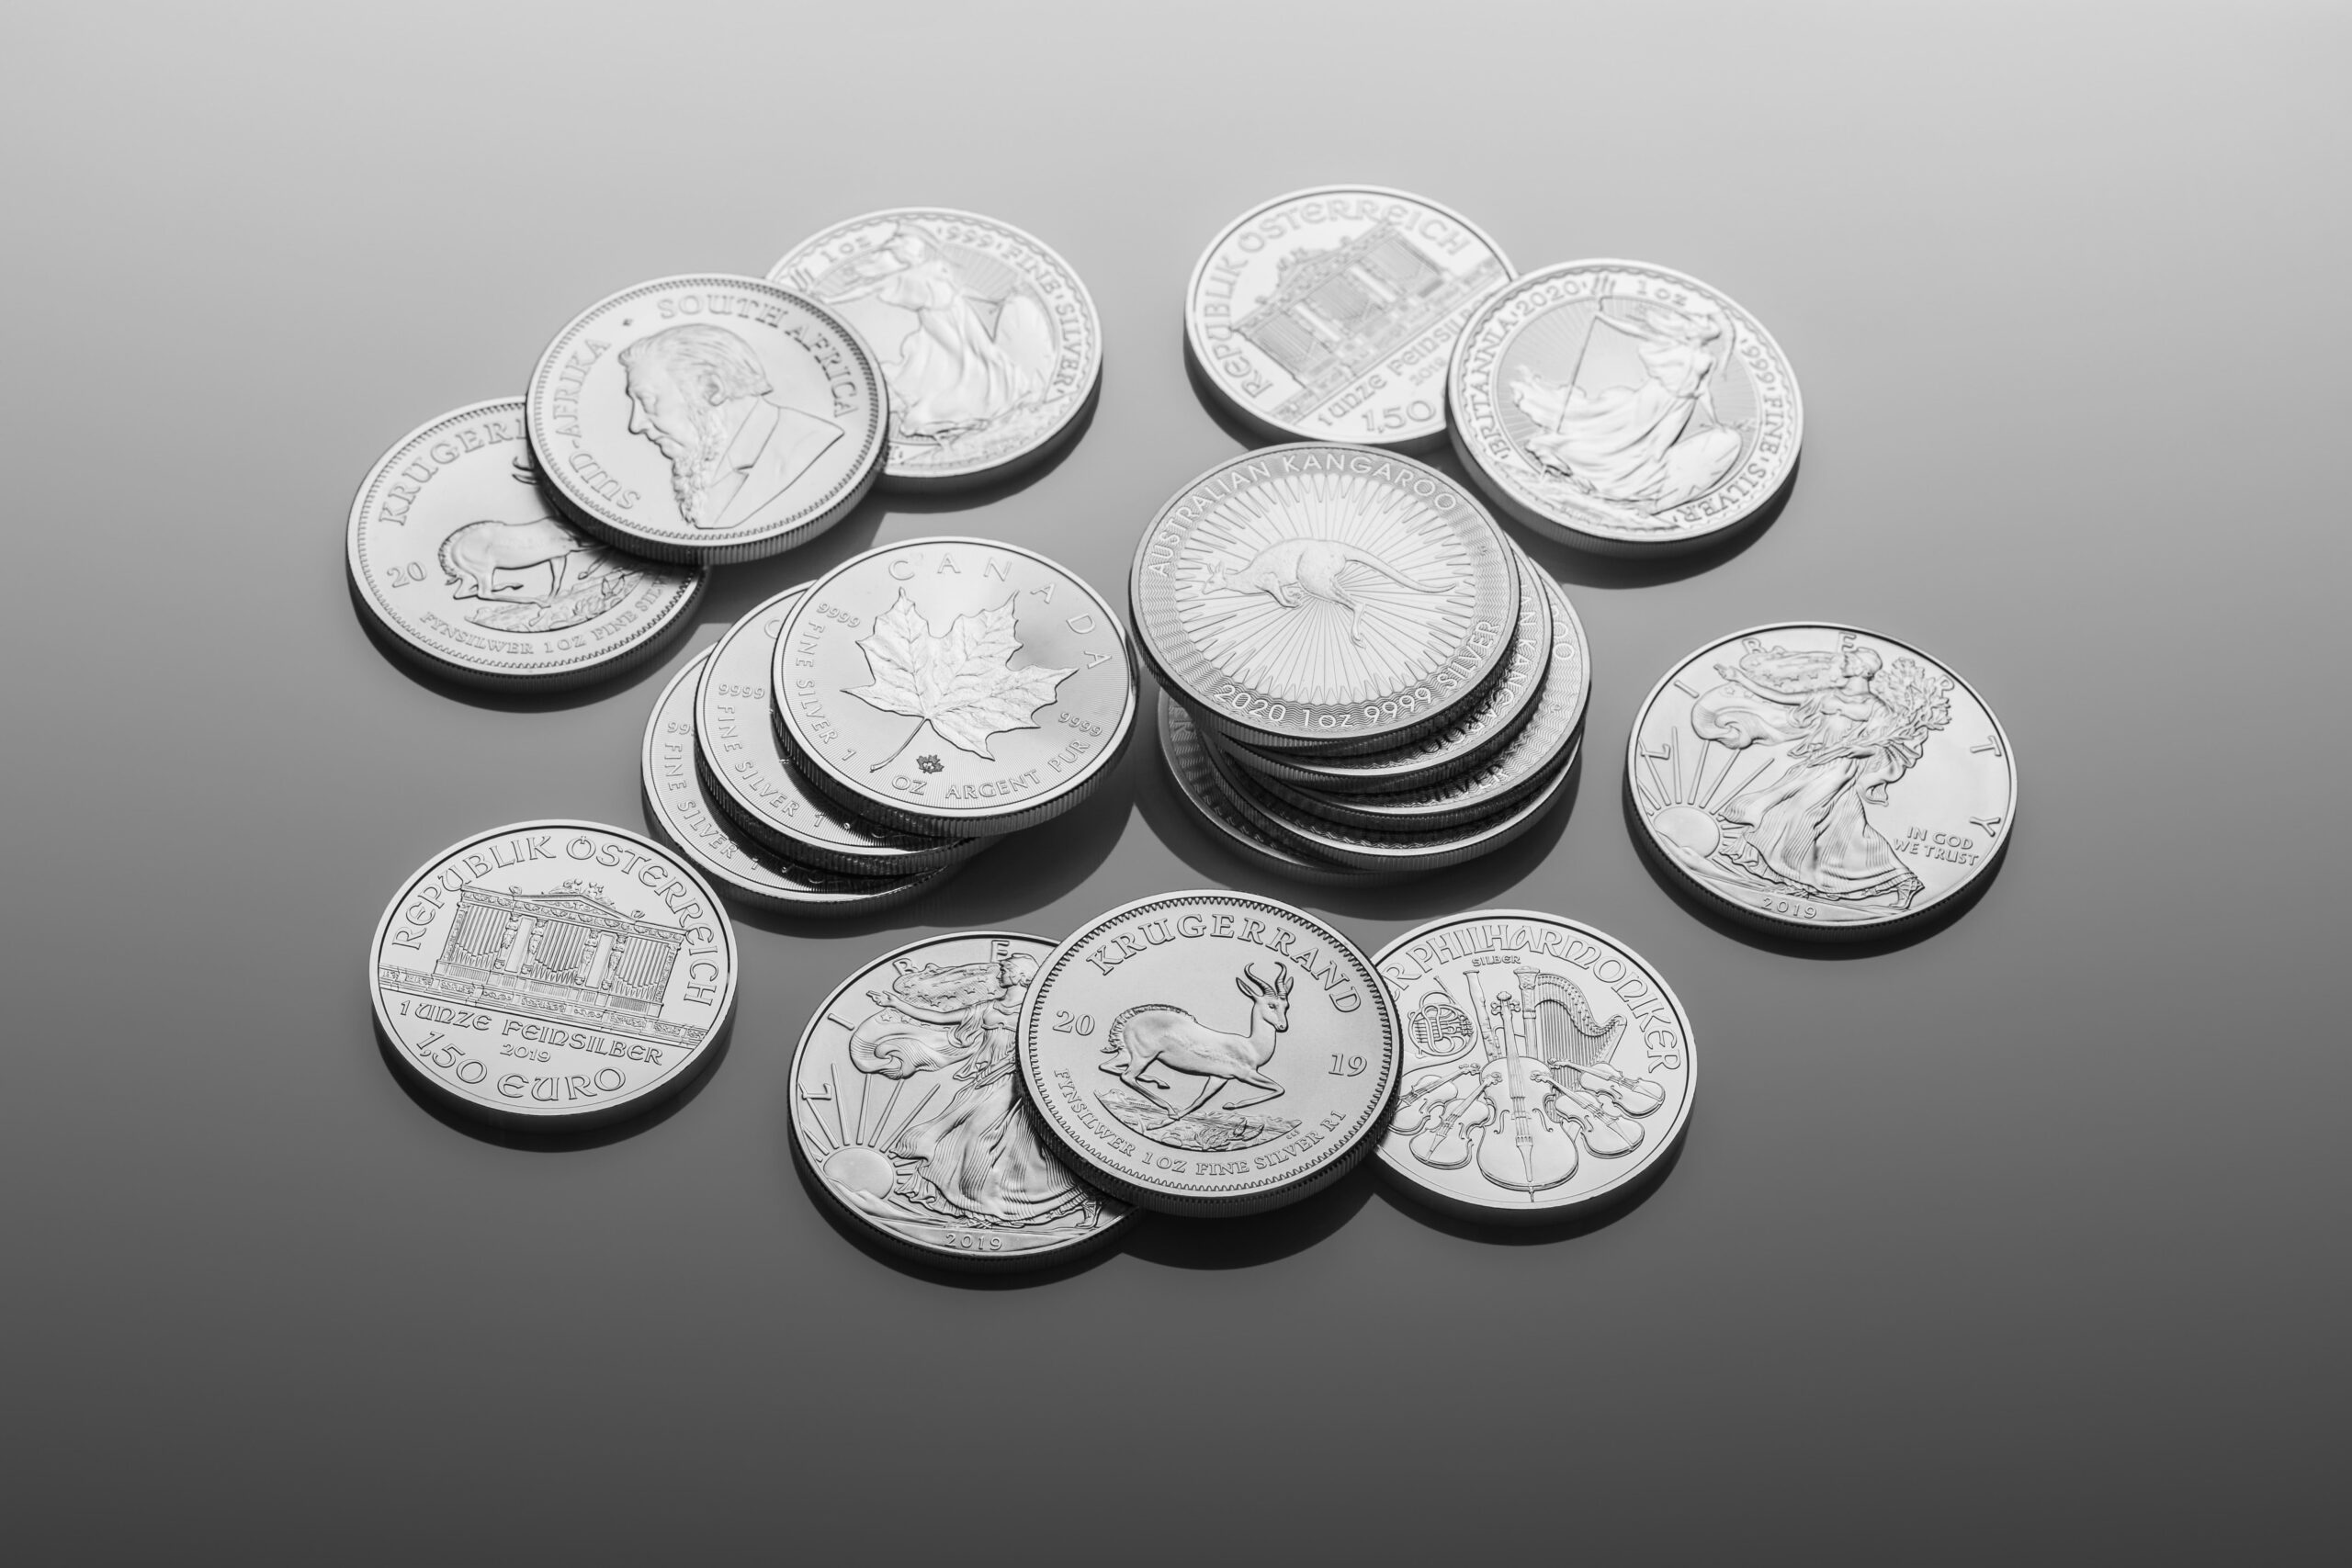 Zilveren munten verkopen